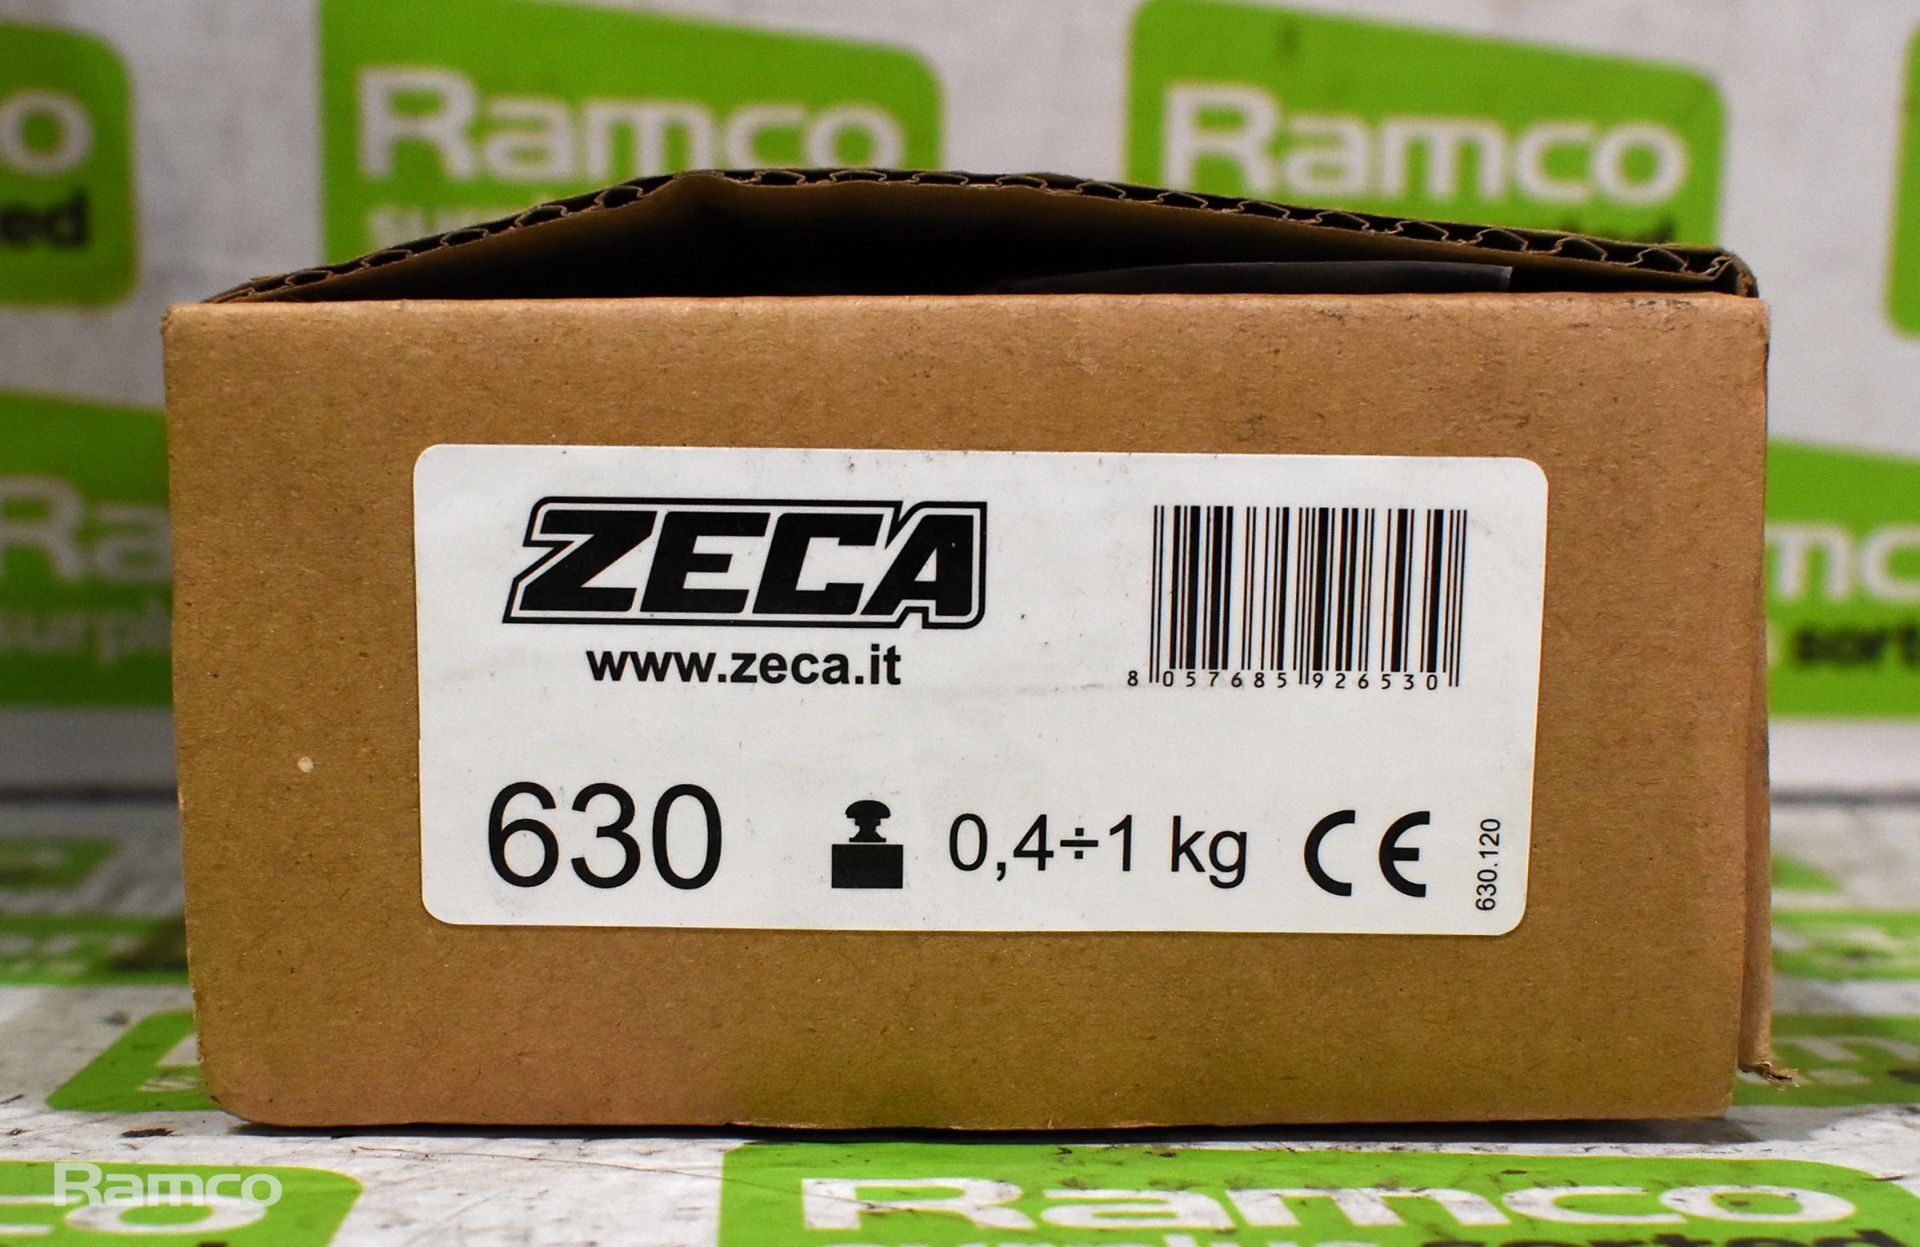 5x Zeca tool balancers - Image 5 of 5